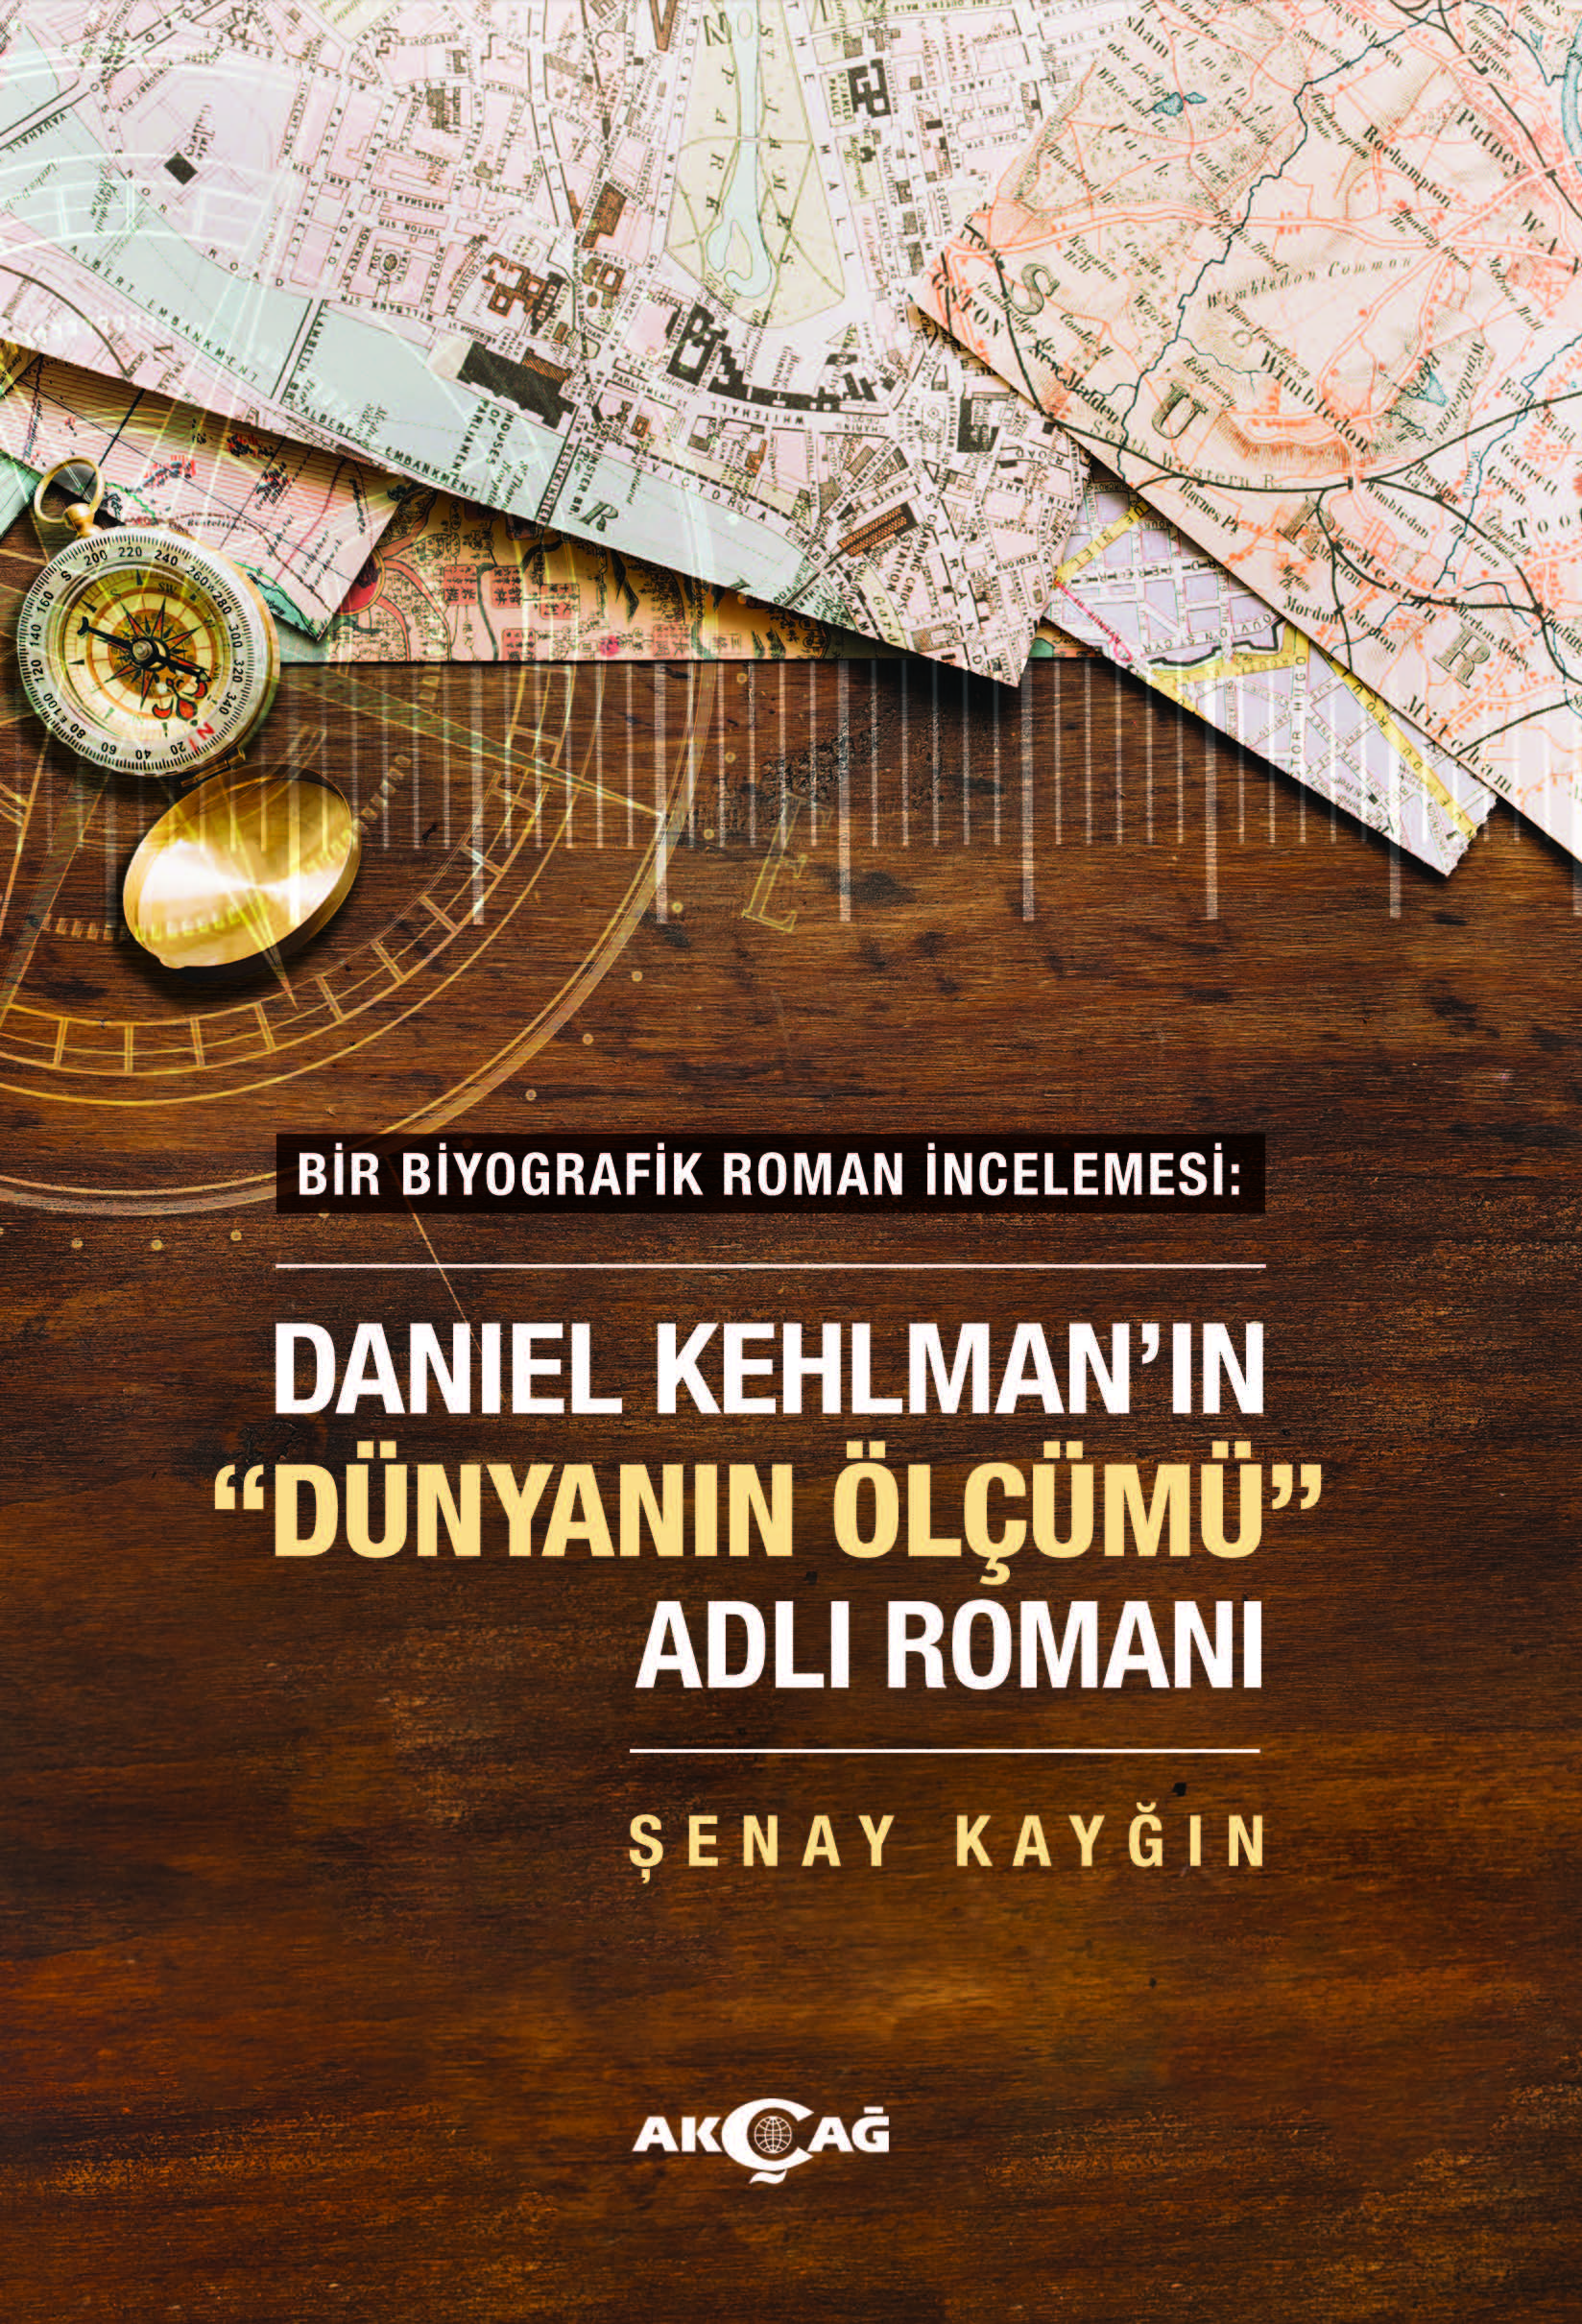 DANIEL KEHLMANN'IN DÜNYANIN ÖLÇÜMÜ ADLI ROMANI